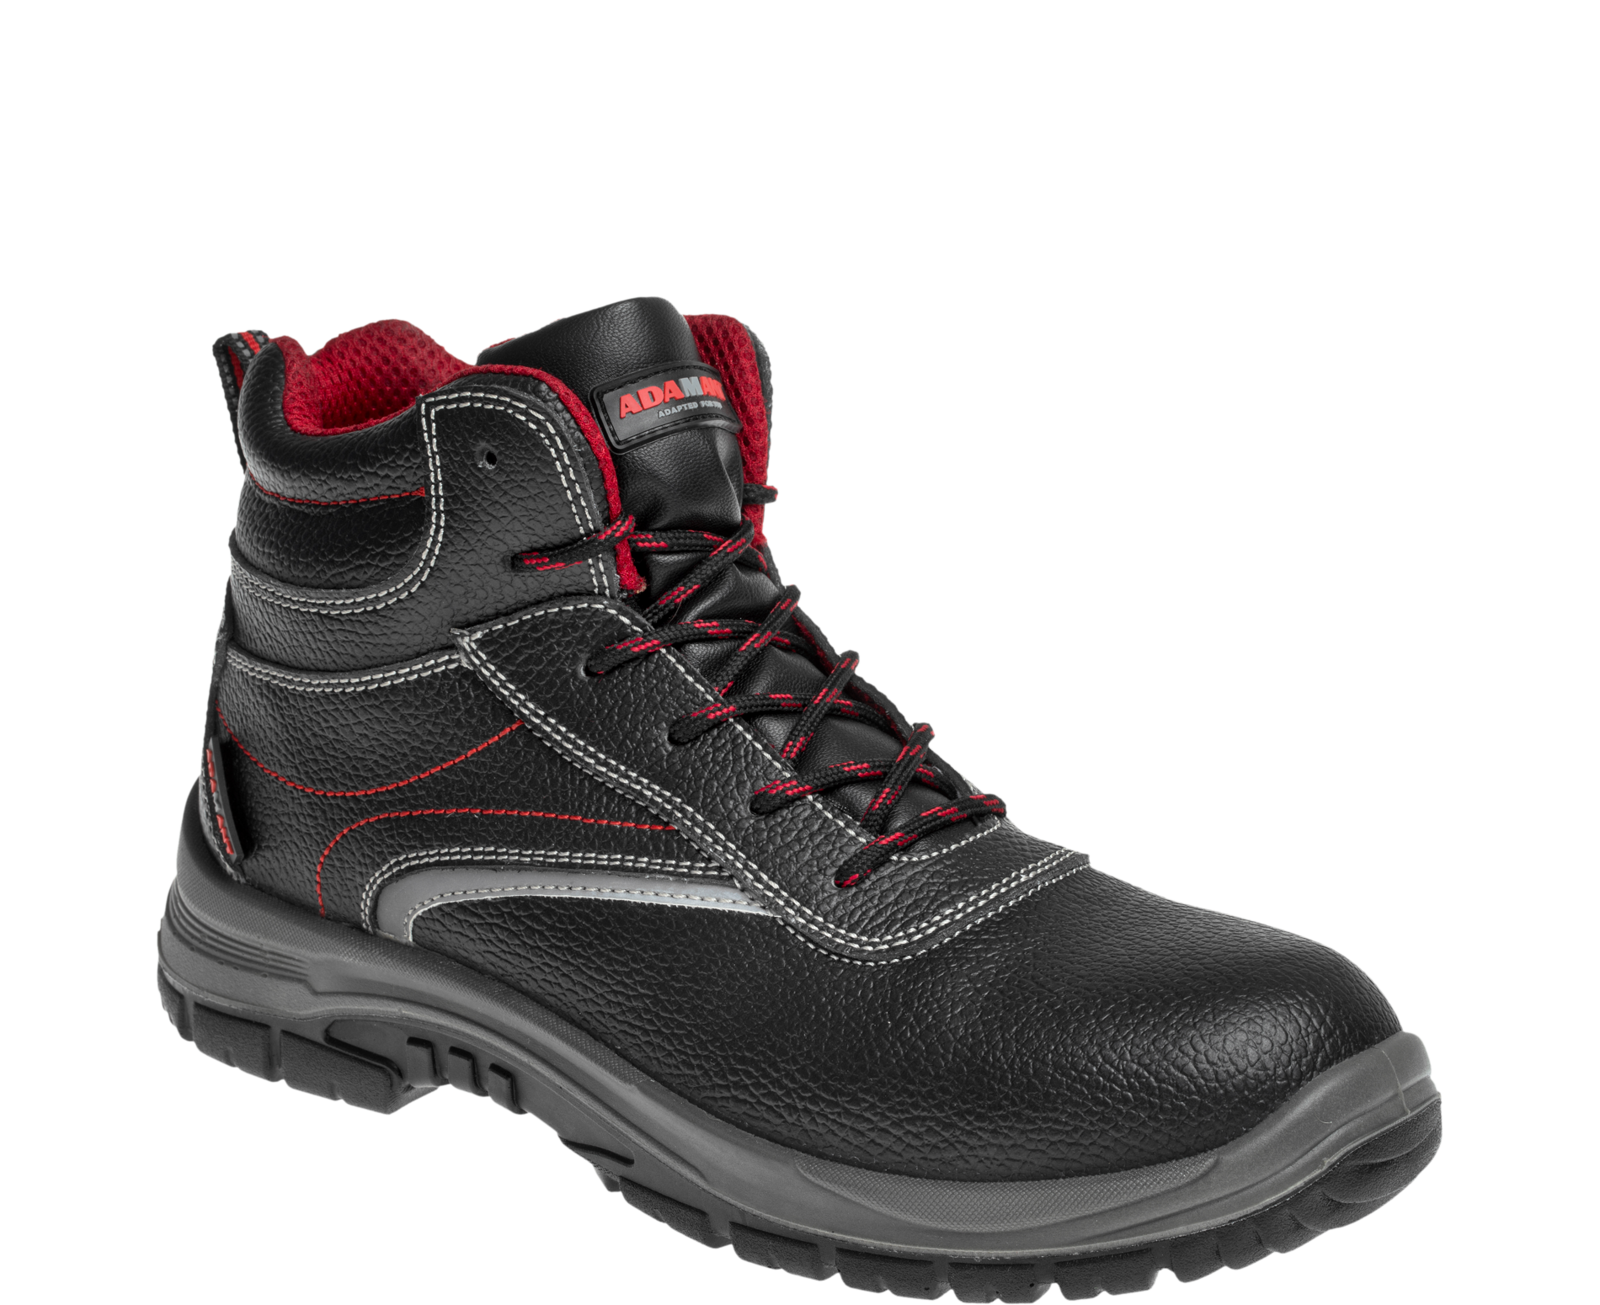 Bezpečnostná členková obuv Adamant Non Metallic S3 High SRC - veľkosť: 42, farba: čierna/červená